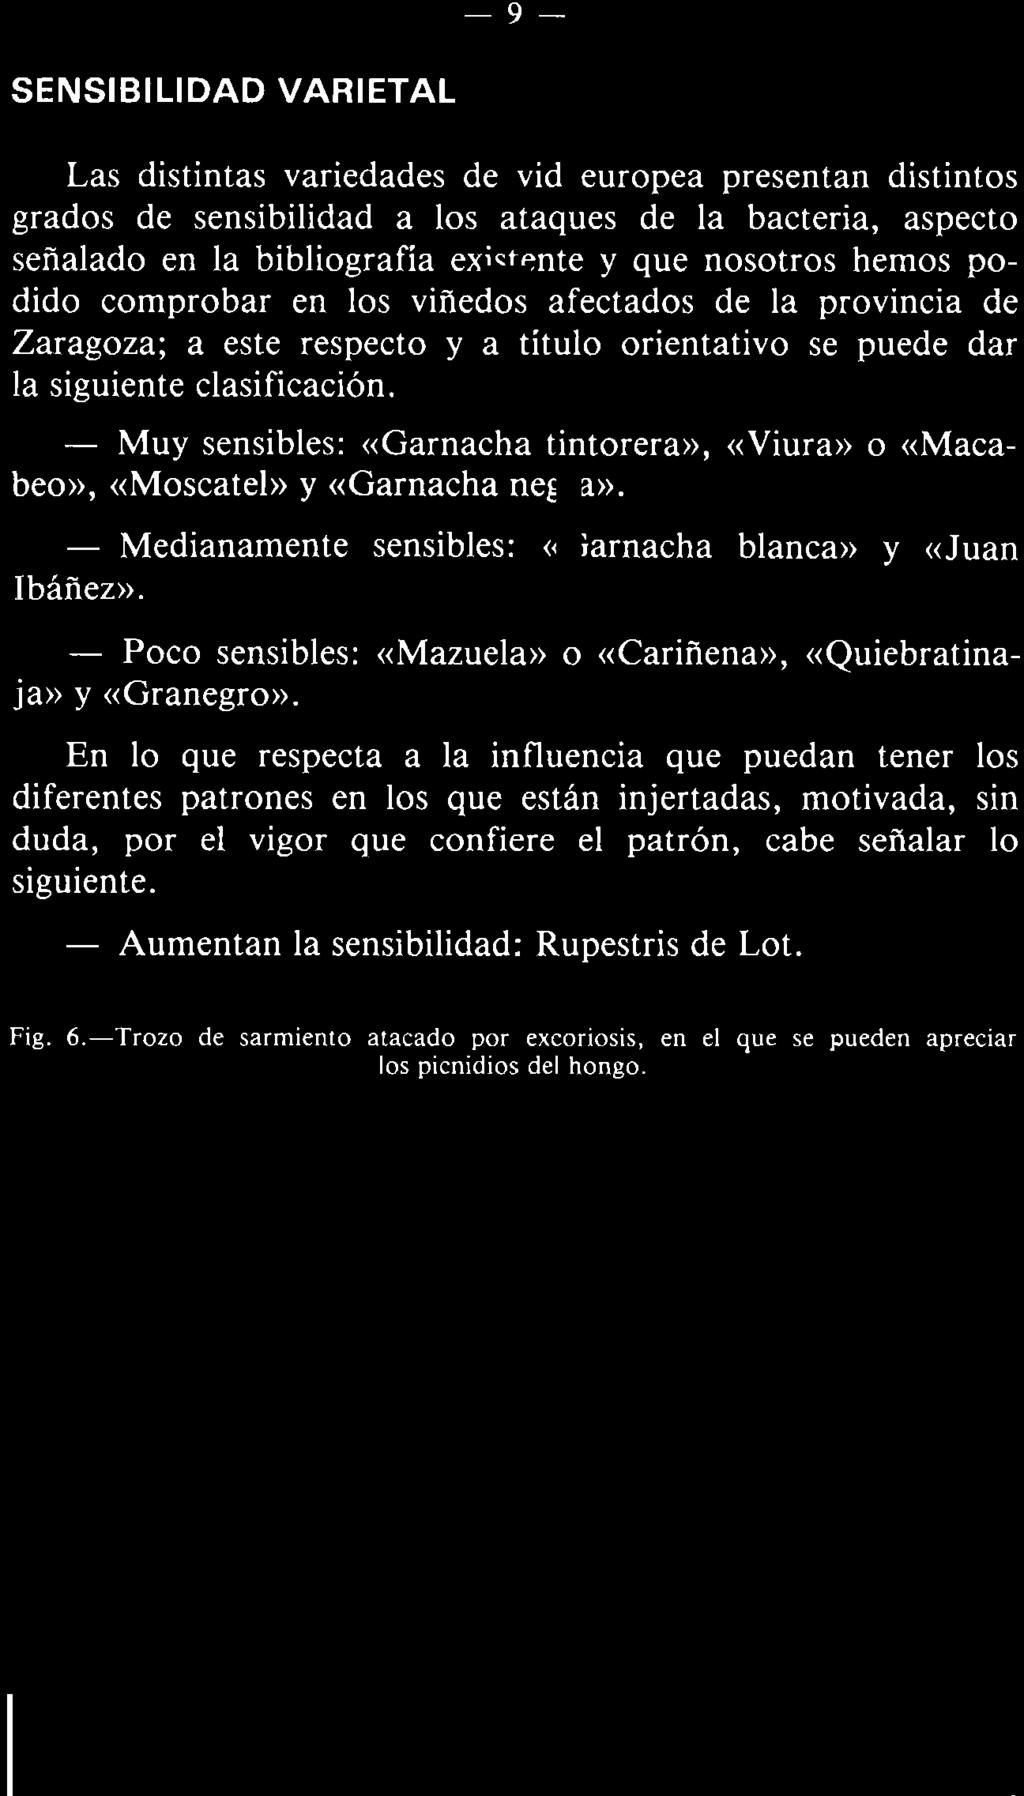 - Muy sensibles: «Garnacha tintorera», «Viura» o «Macabeo», «Moscatel» y «Garnacha negra». - Medianamente sensibles: «Garnacha blanca» y «Juan Ibáñez».